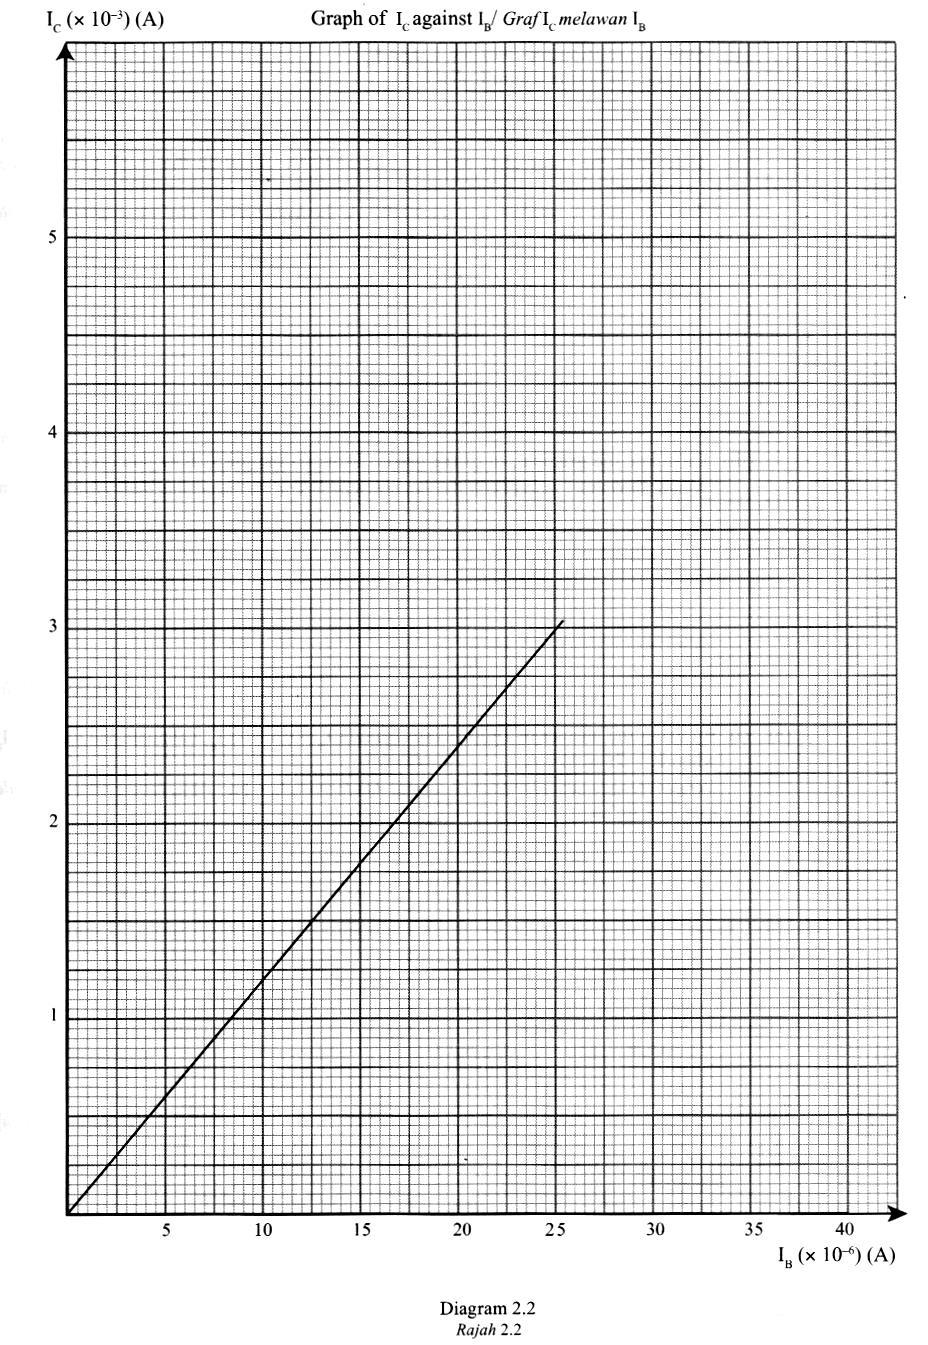 1) Based on the graph in Diagram 2.2: Berdasarkan graf pada Rajah 2.2: a) State the relationship between I and I B. Nyatakan hubungan antara I dan I B.